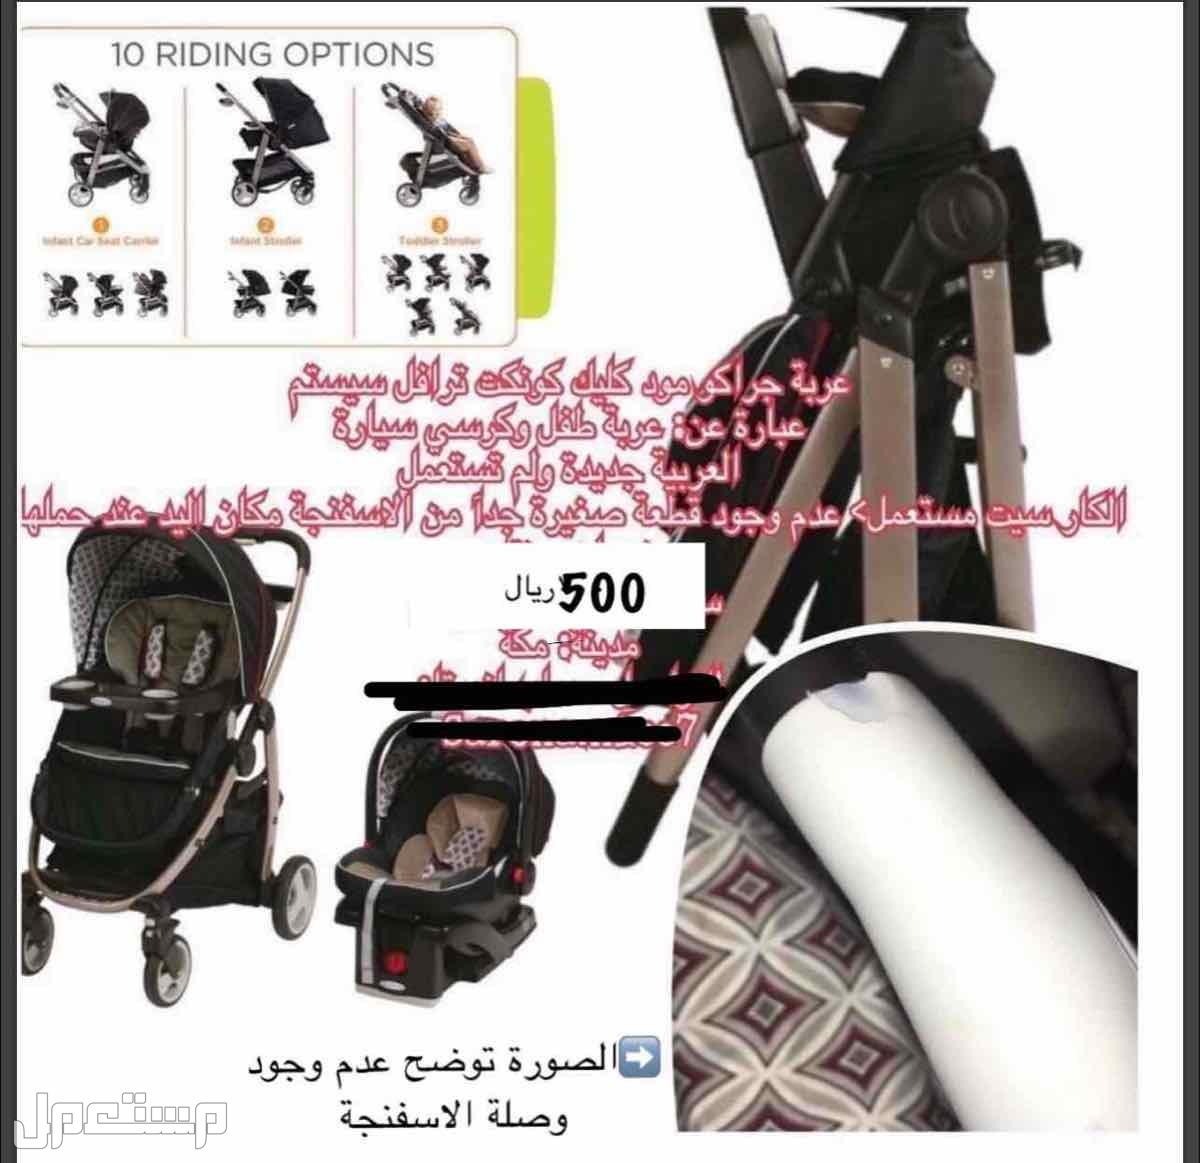 عربية اطفال ماركة جراكو بسعر 500 ريال